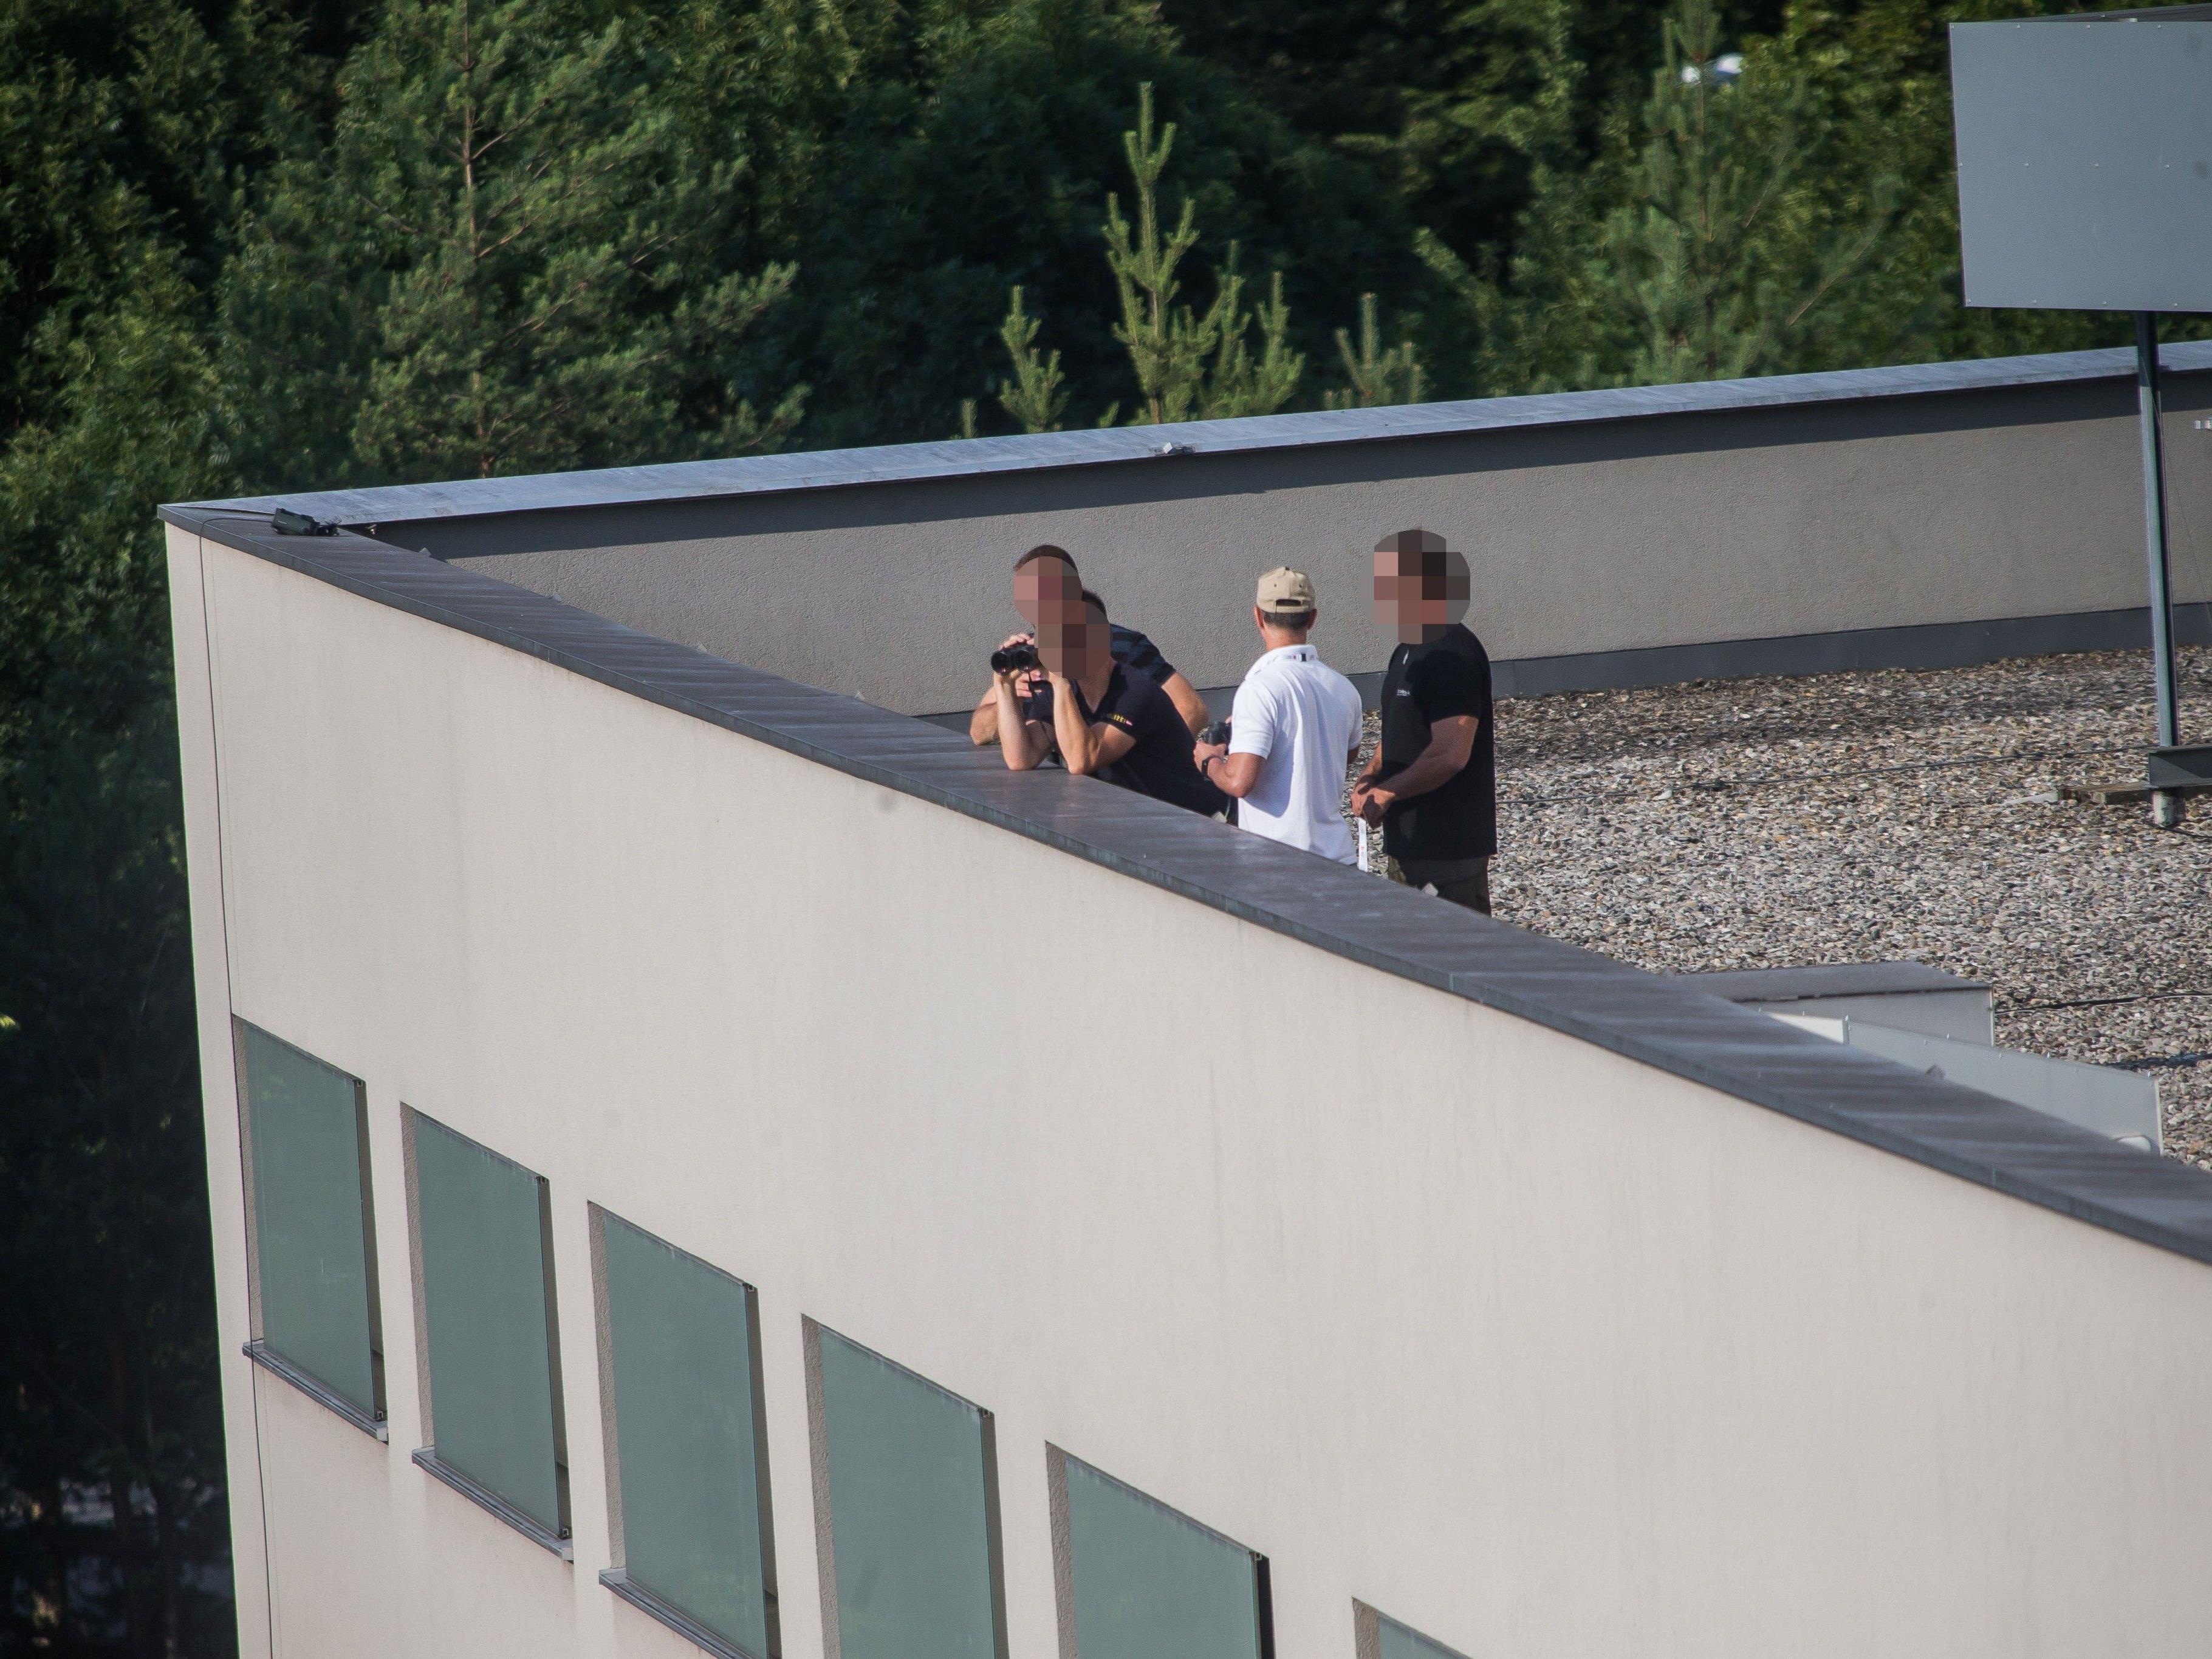 Bei den Festspielen wurden in diesem Jahr sogar Beamte auf dem Dach positioniert.